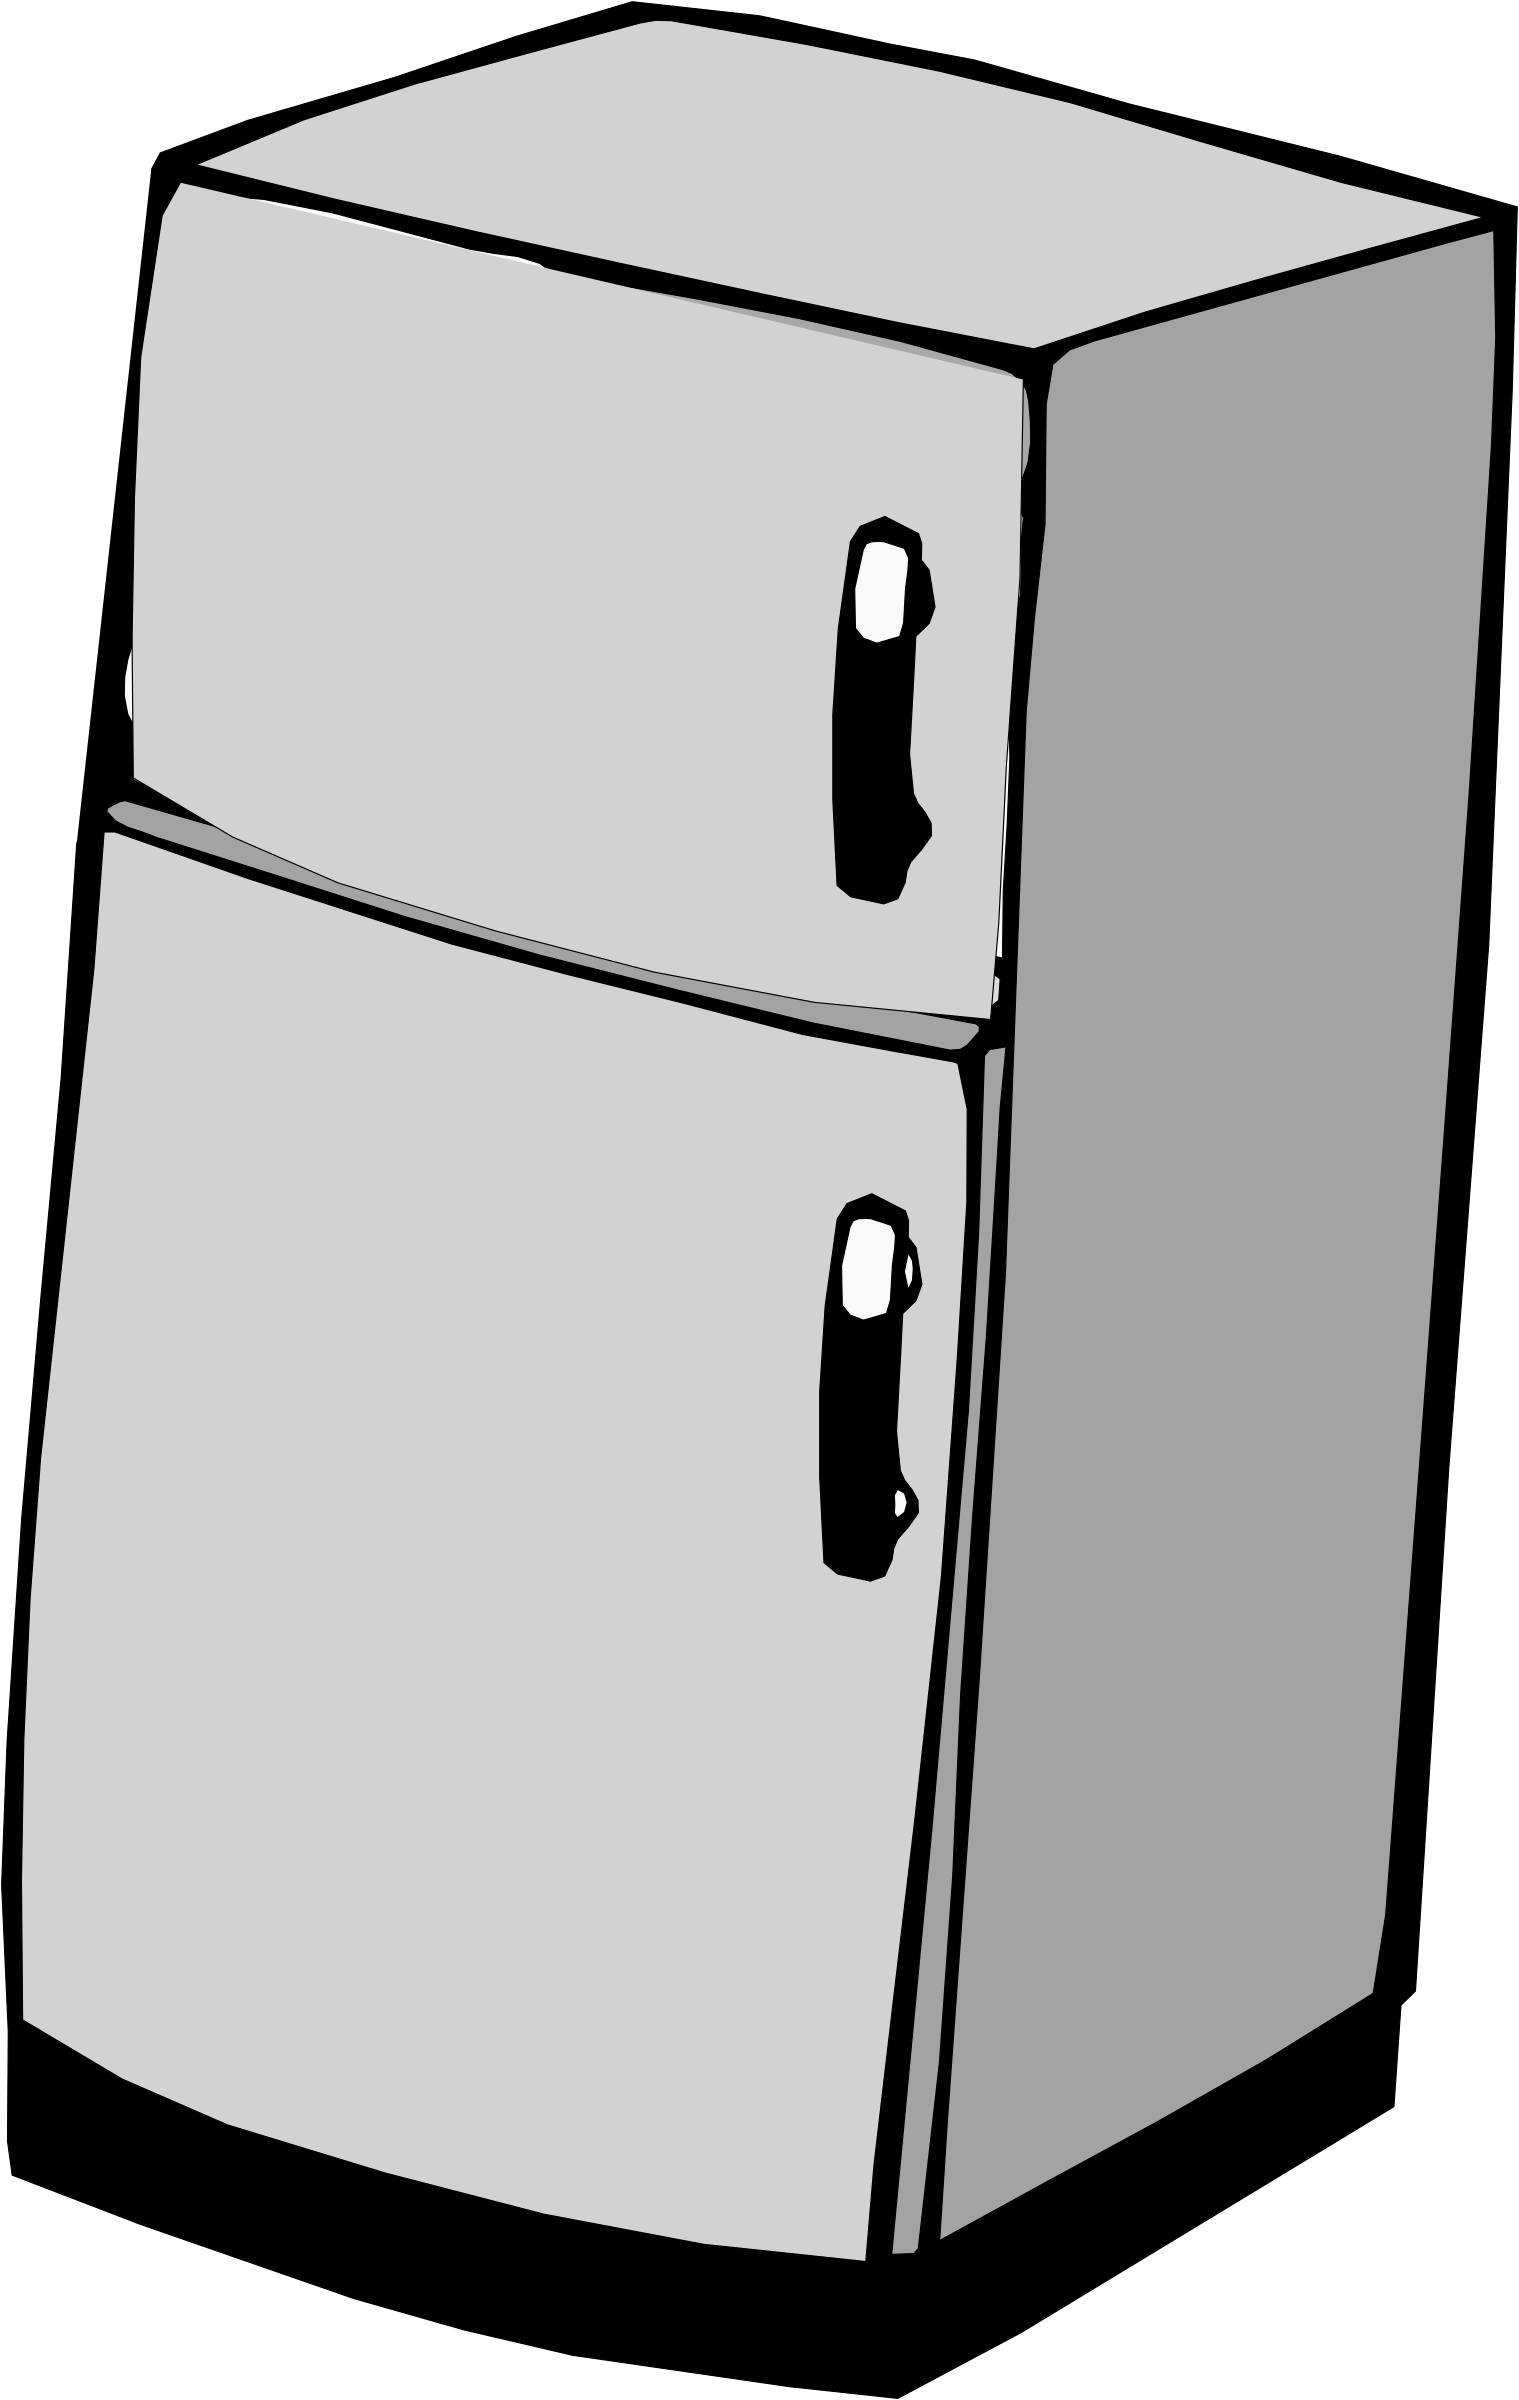 Fridge Transparent PNG Refrigerator Images Free Download.